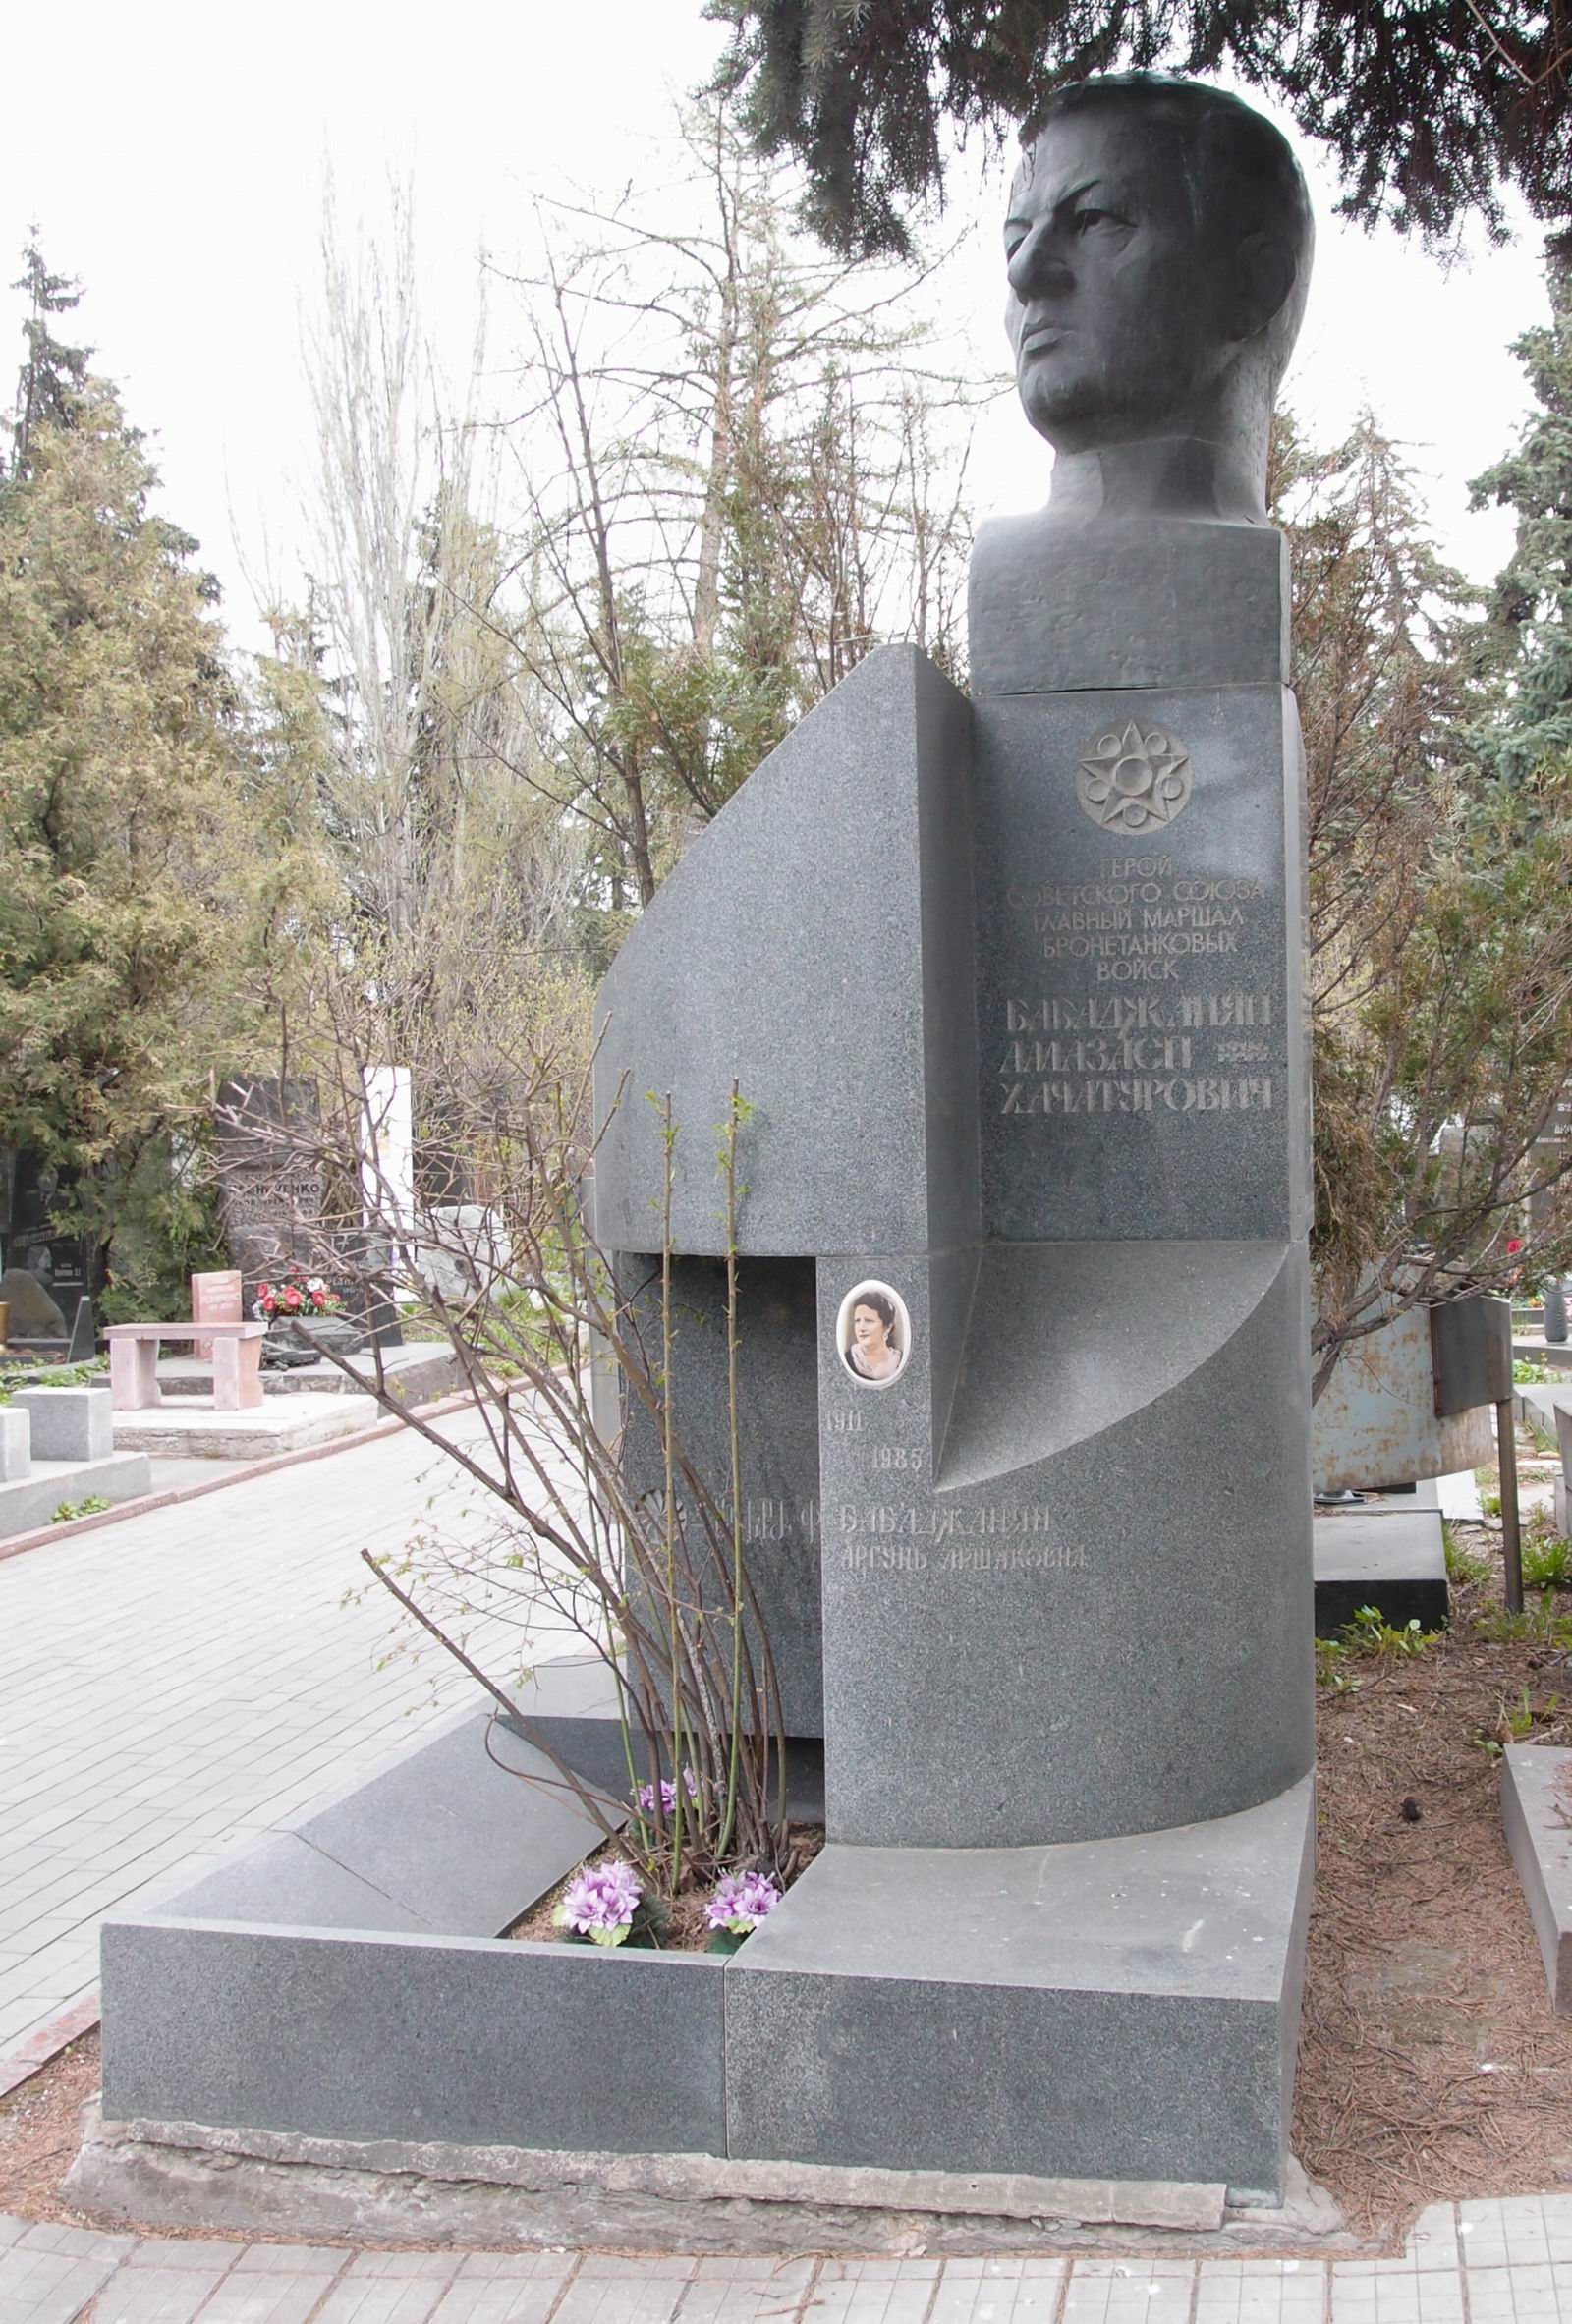 Памятник на могиле Бабаджаняна А.Х. (1906–1977), ск. А.Шираз, Р.Джулакян, арх. К.Сейланов, на Новодевичьем кладбище (7–14–12). Нажмите левую кнопку мыши чтобы увидеть фрагмент памятника.